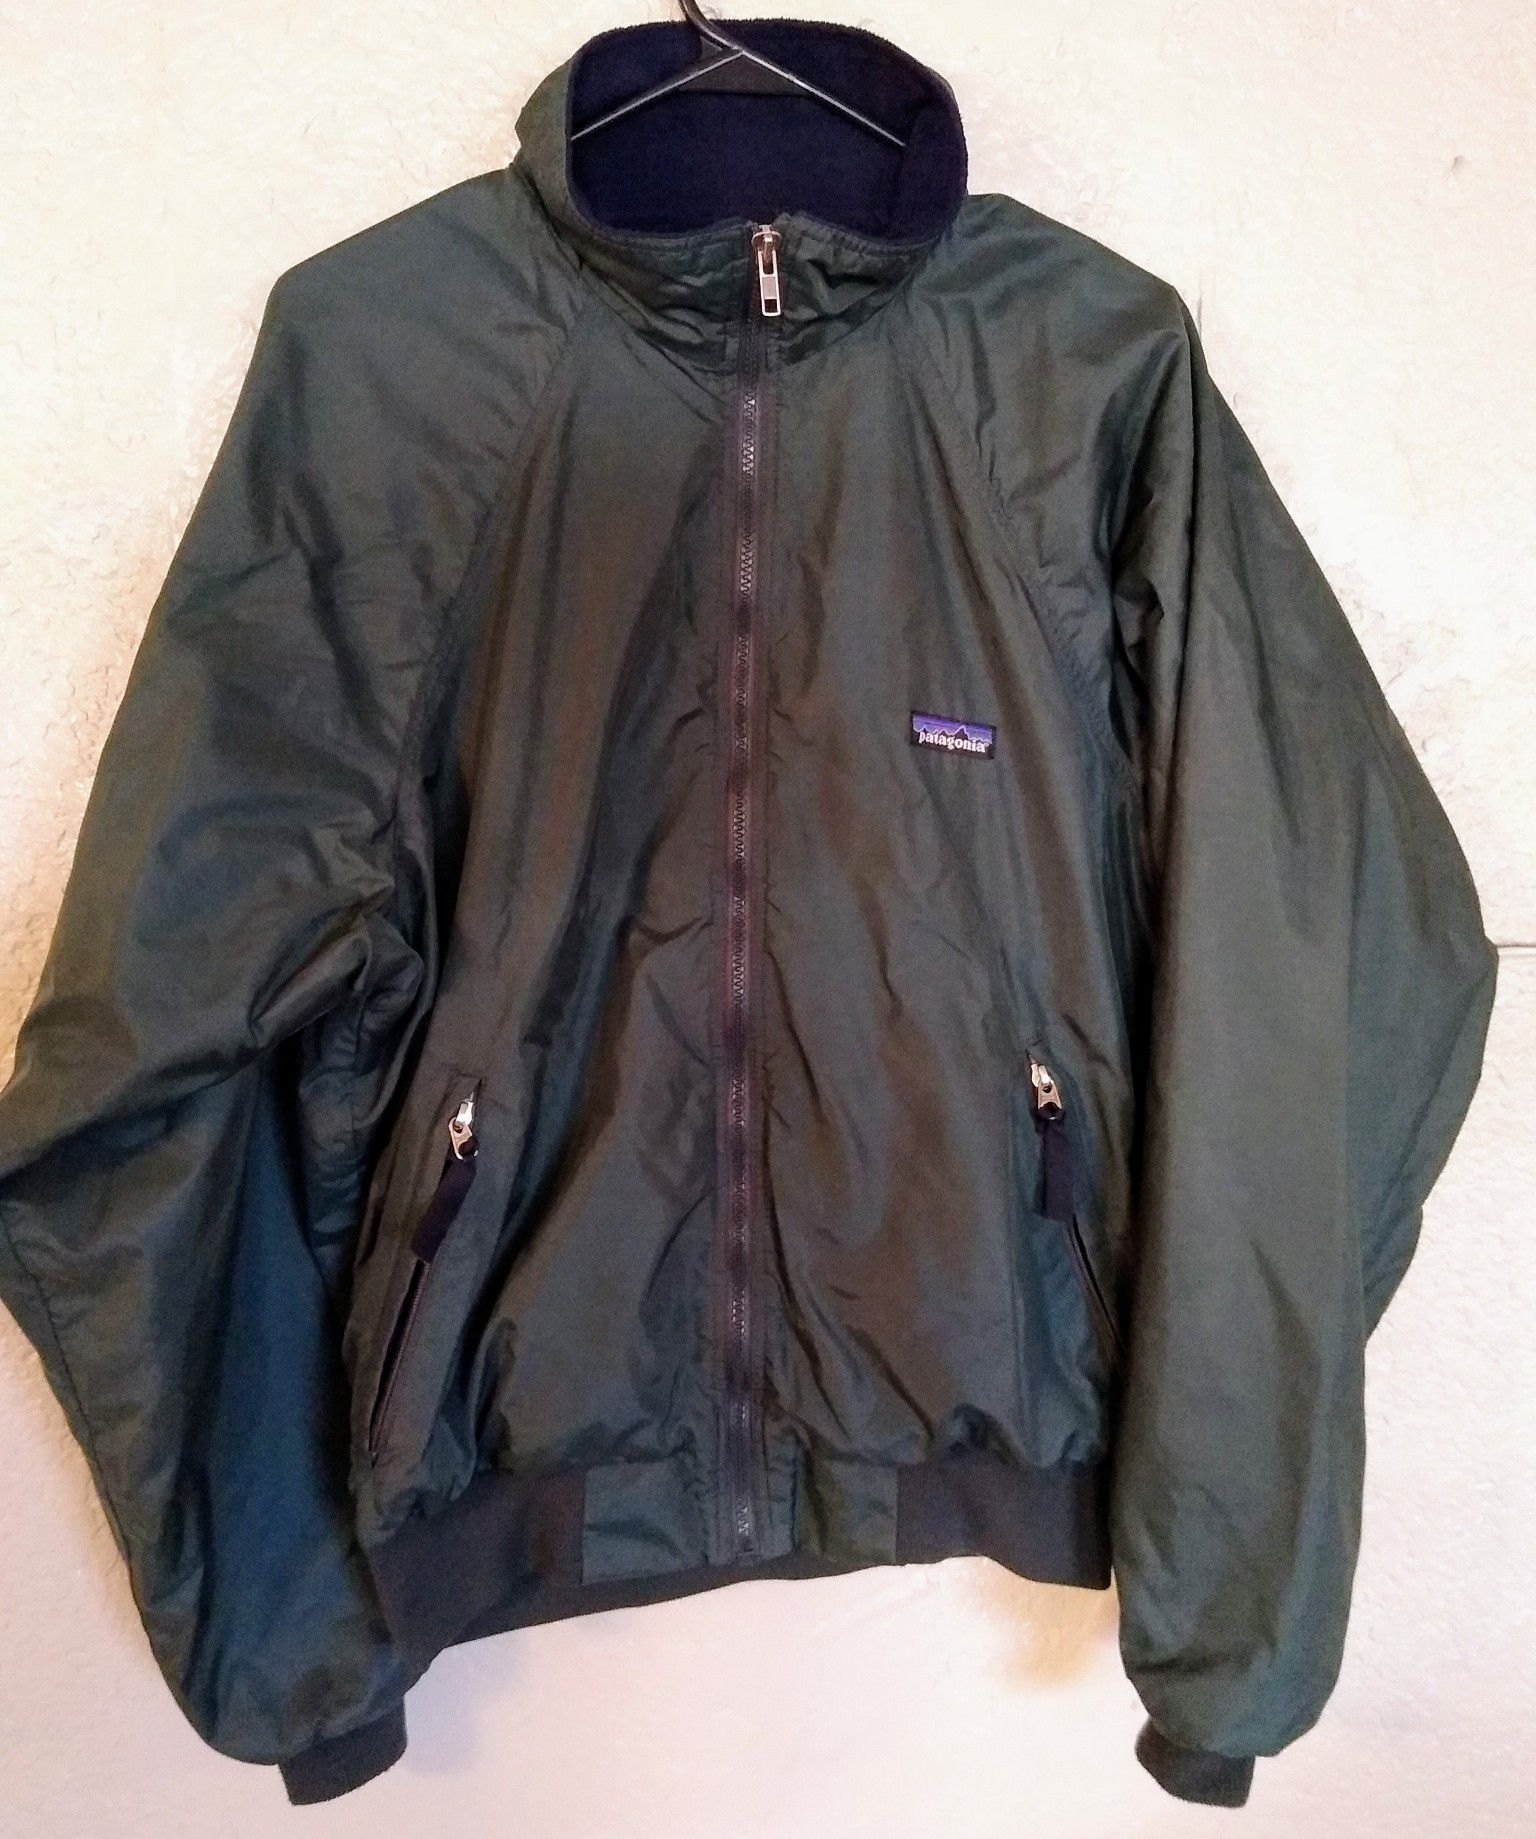 Patagonia bomber jacket